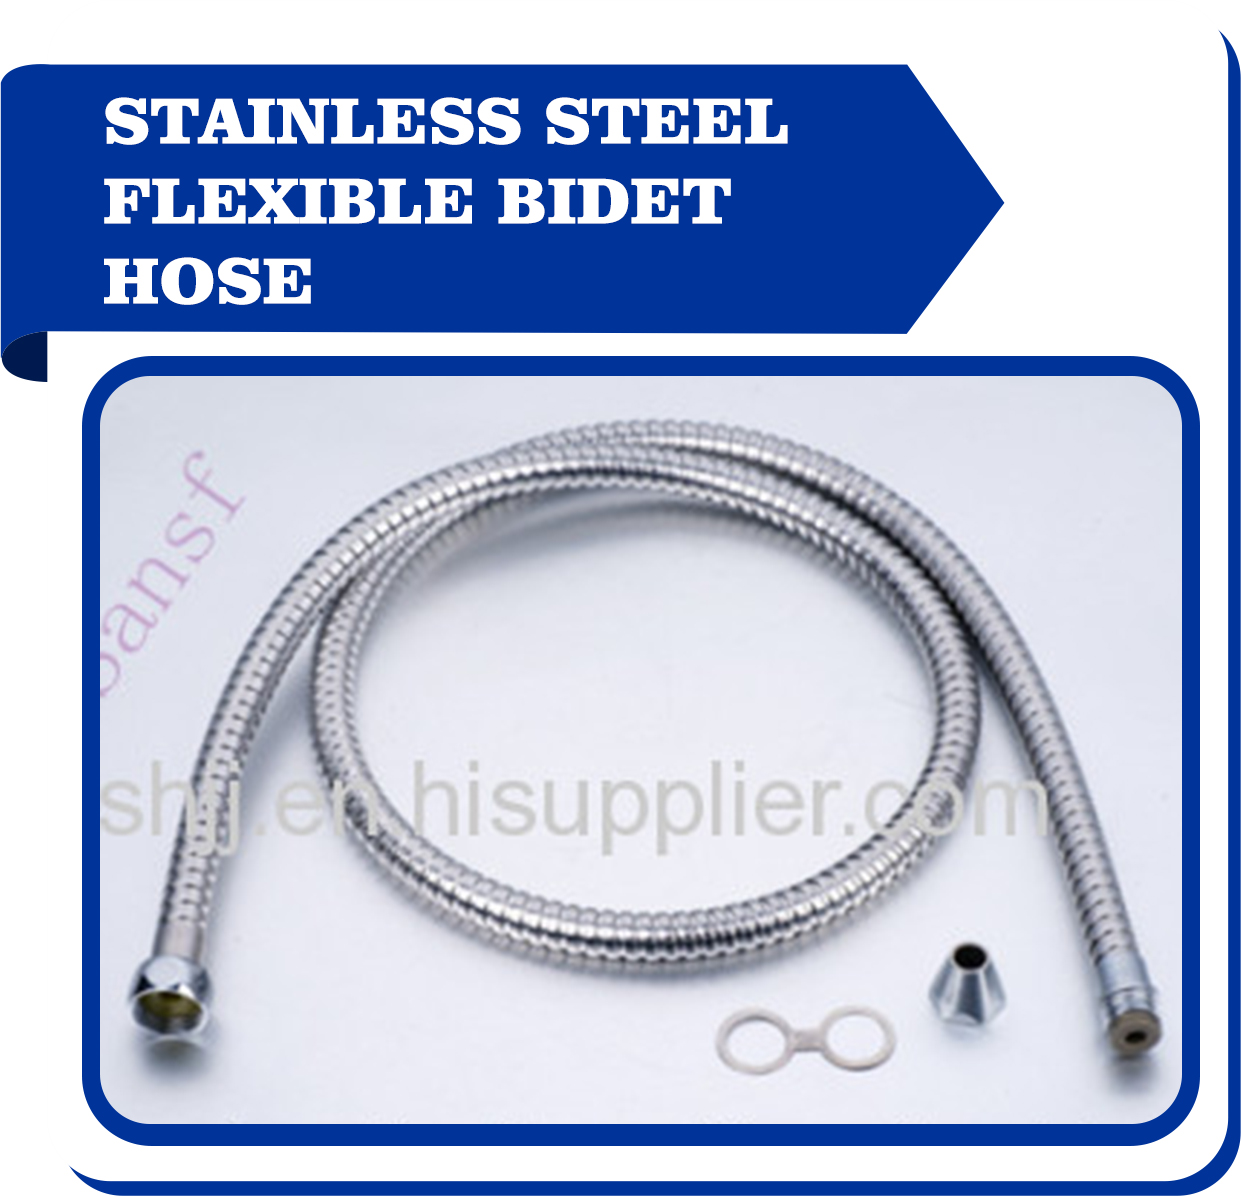 Stainless steel flexible bidet hose